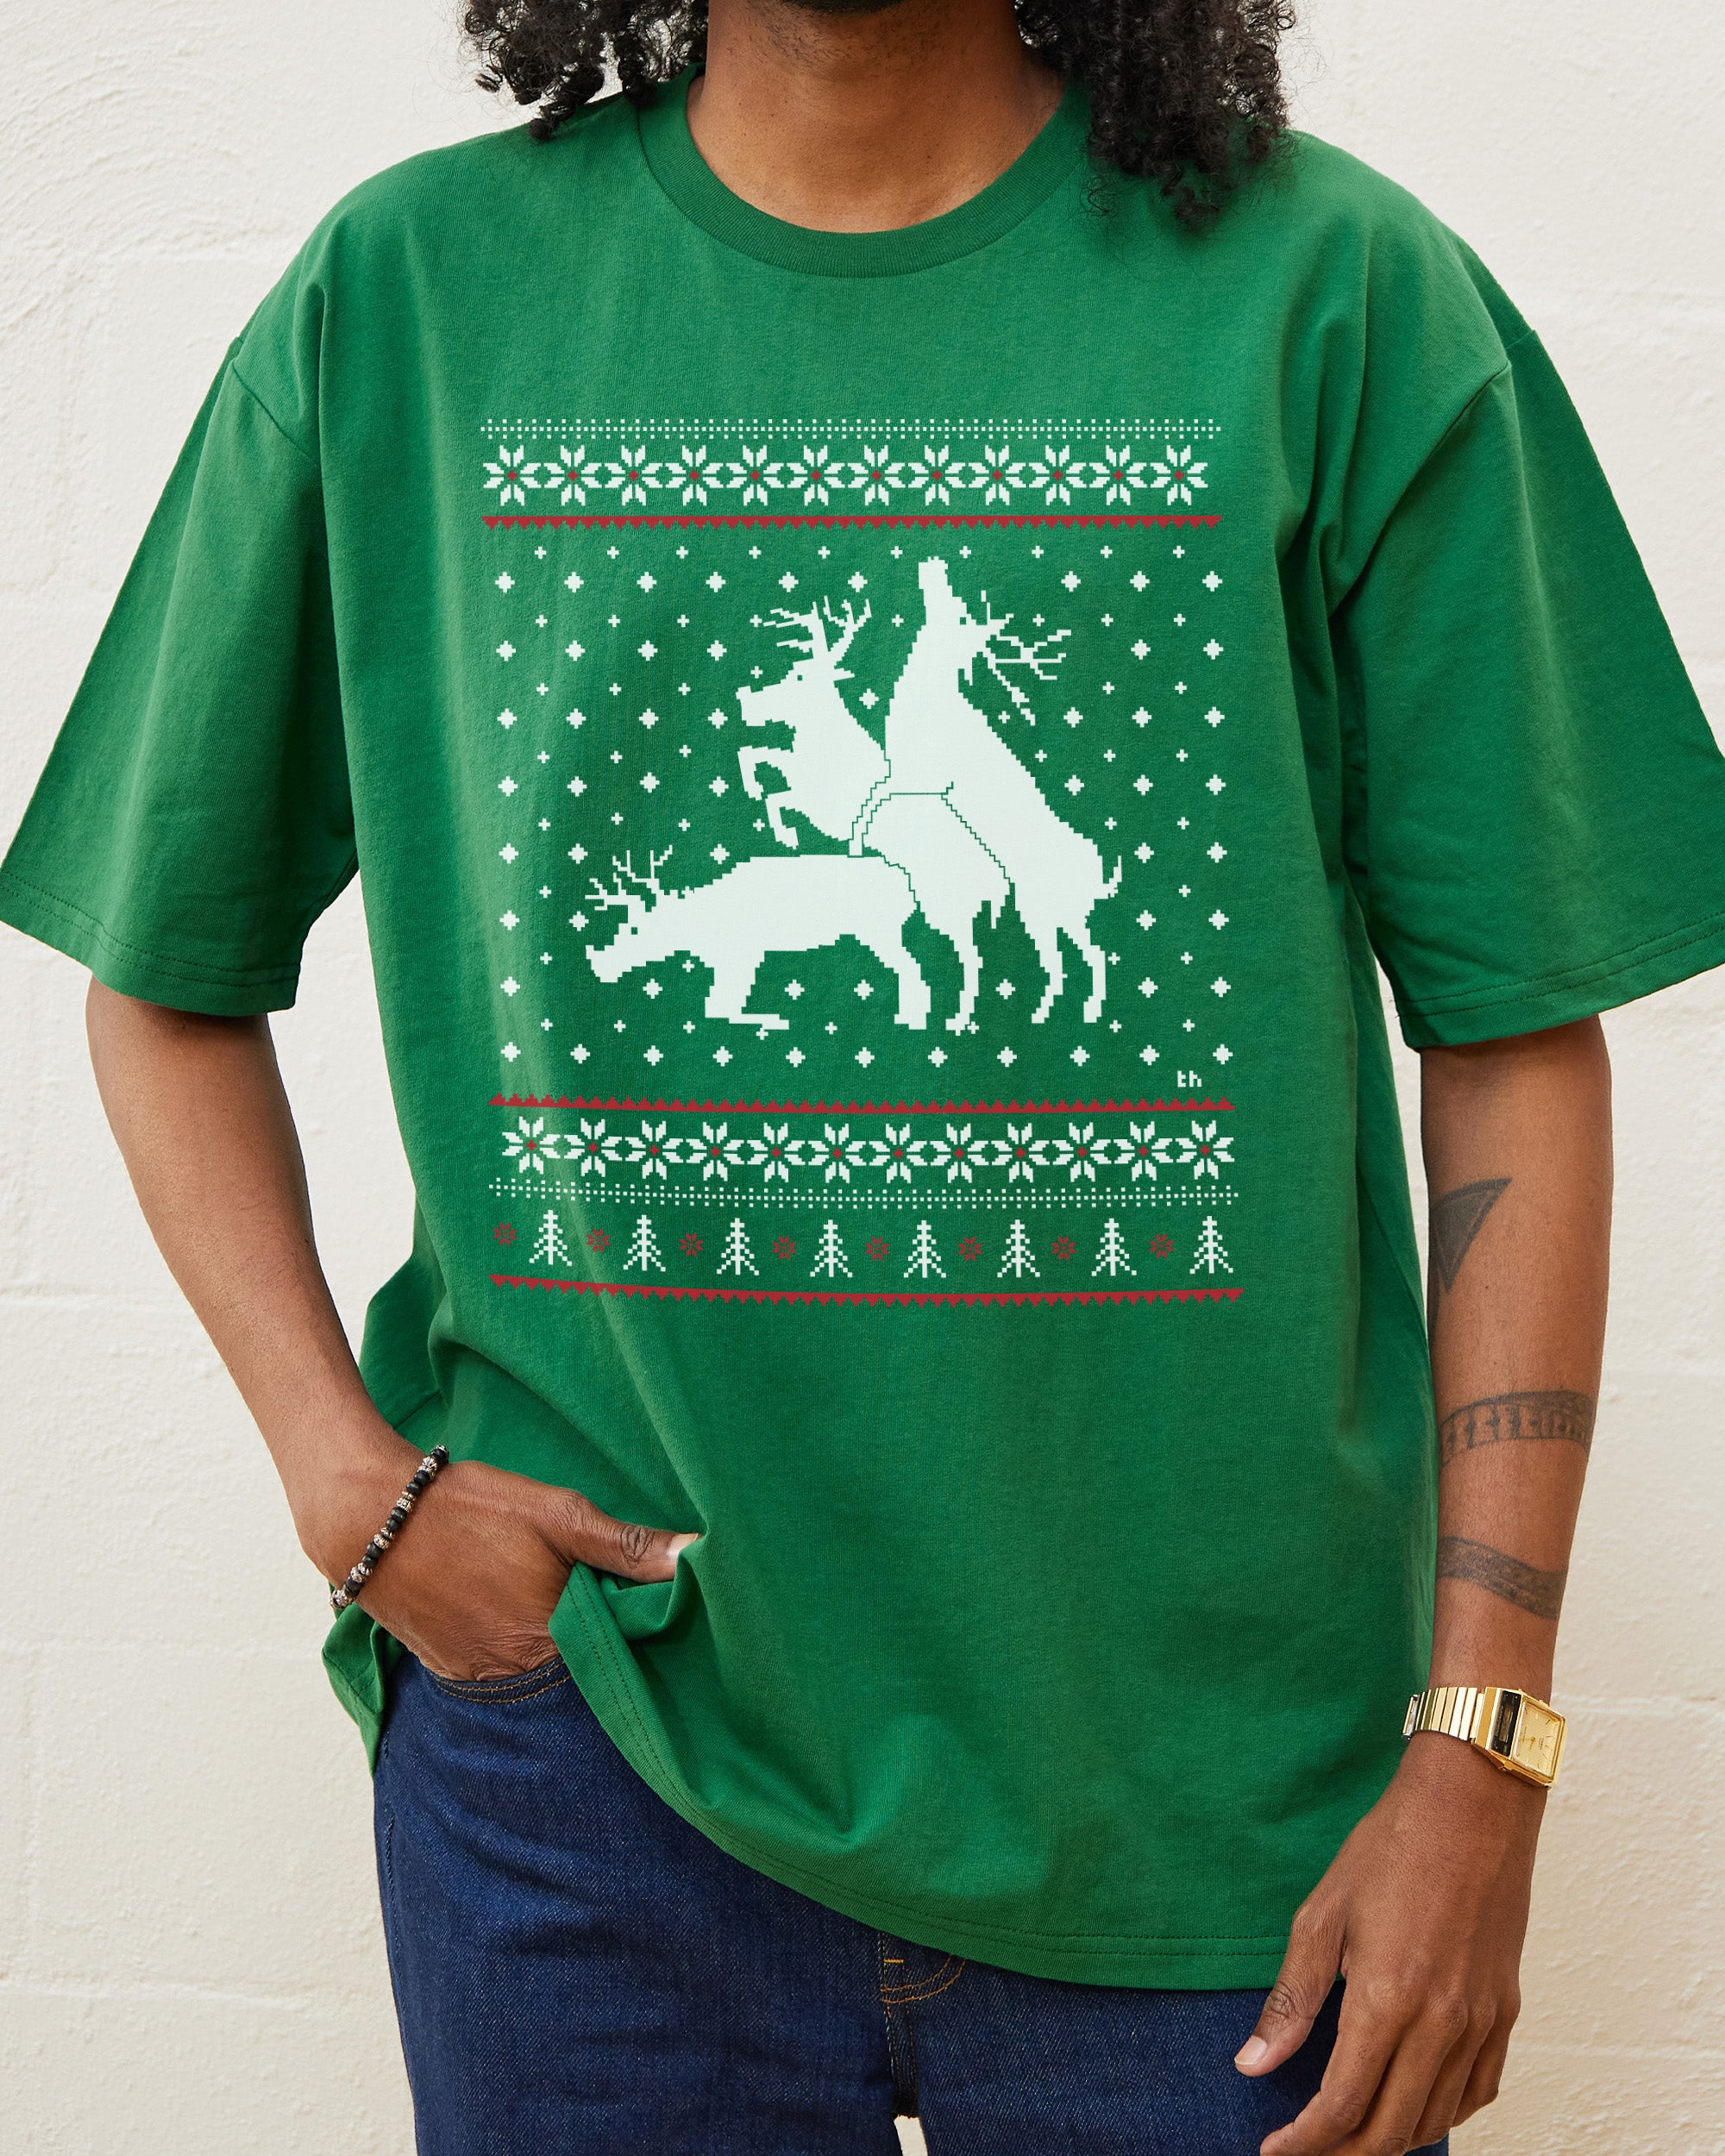 Sexing Reindeer Ugly Jumper T-Shirt